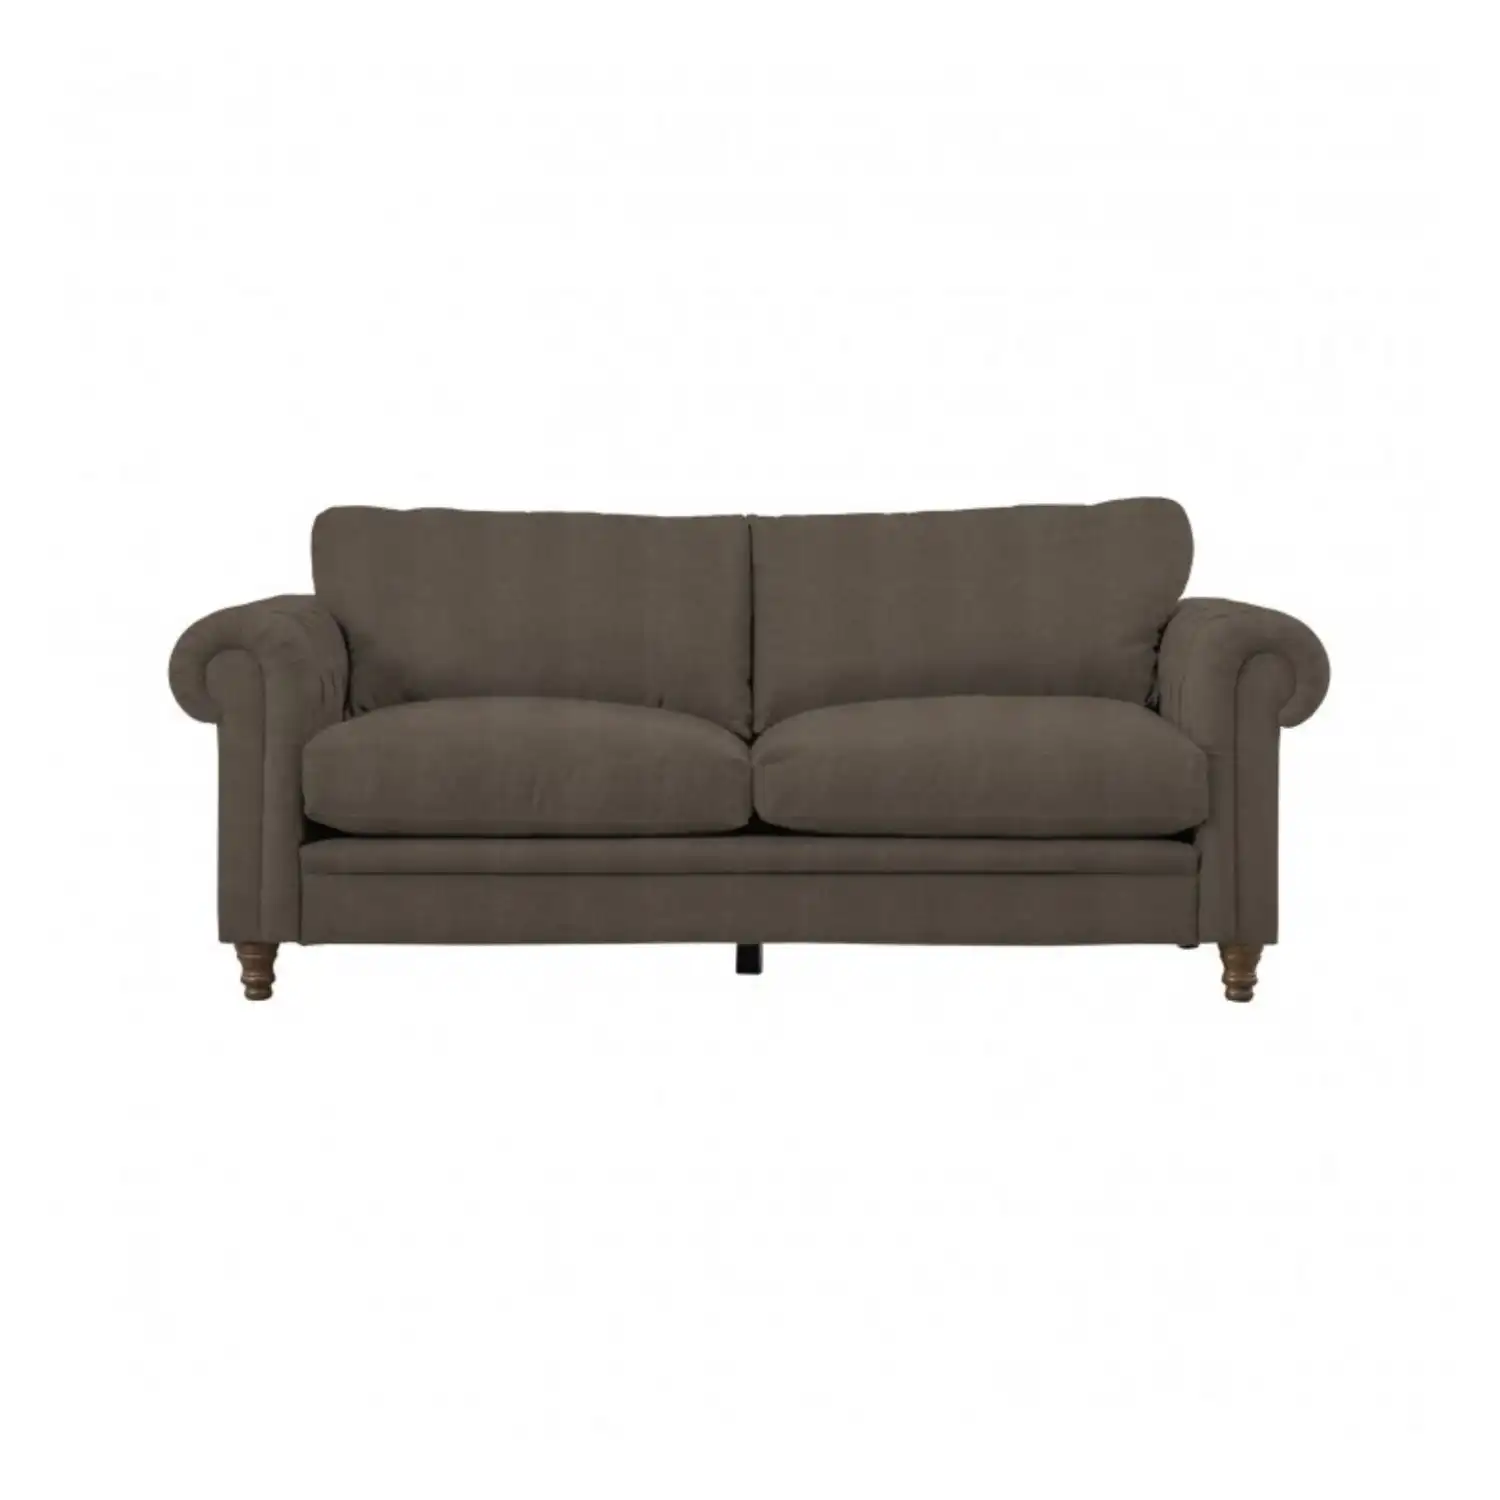 Vintage Style Placido Truffle Velvet Fabric Upholstered Living Room 3 Seater Sofa 88x205cm